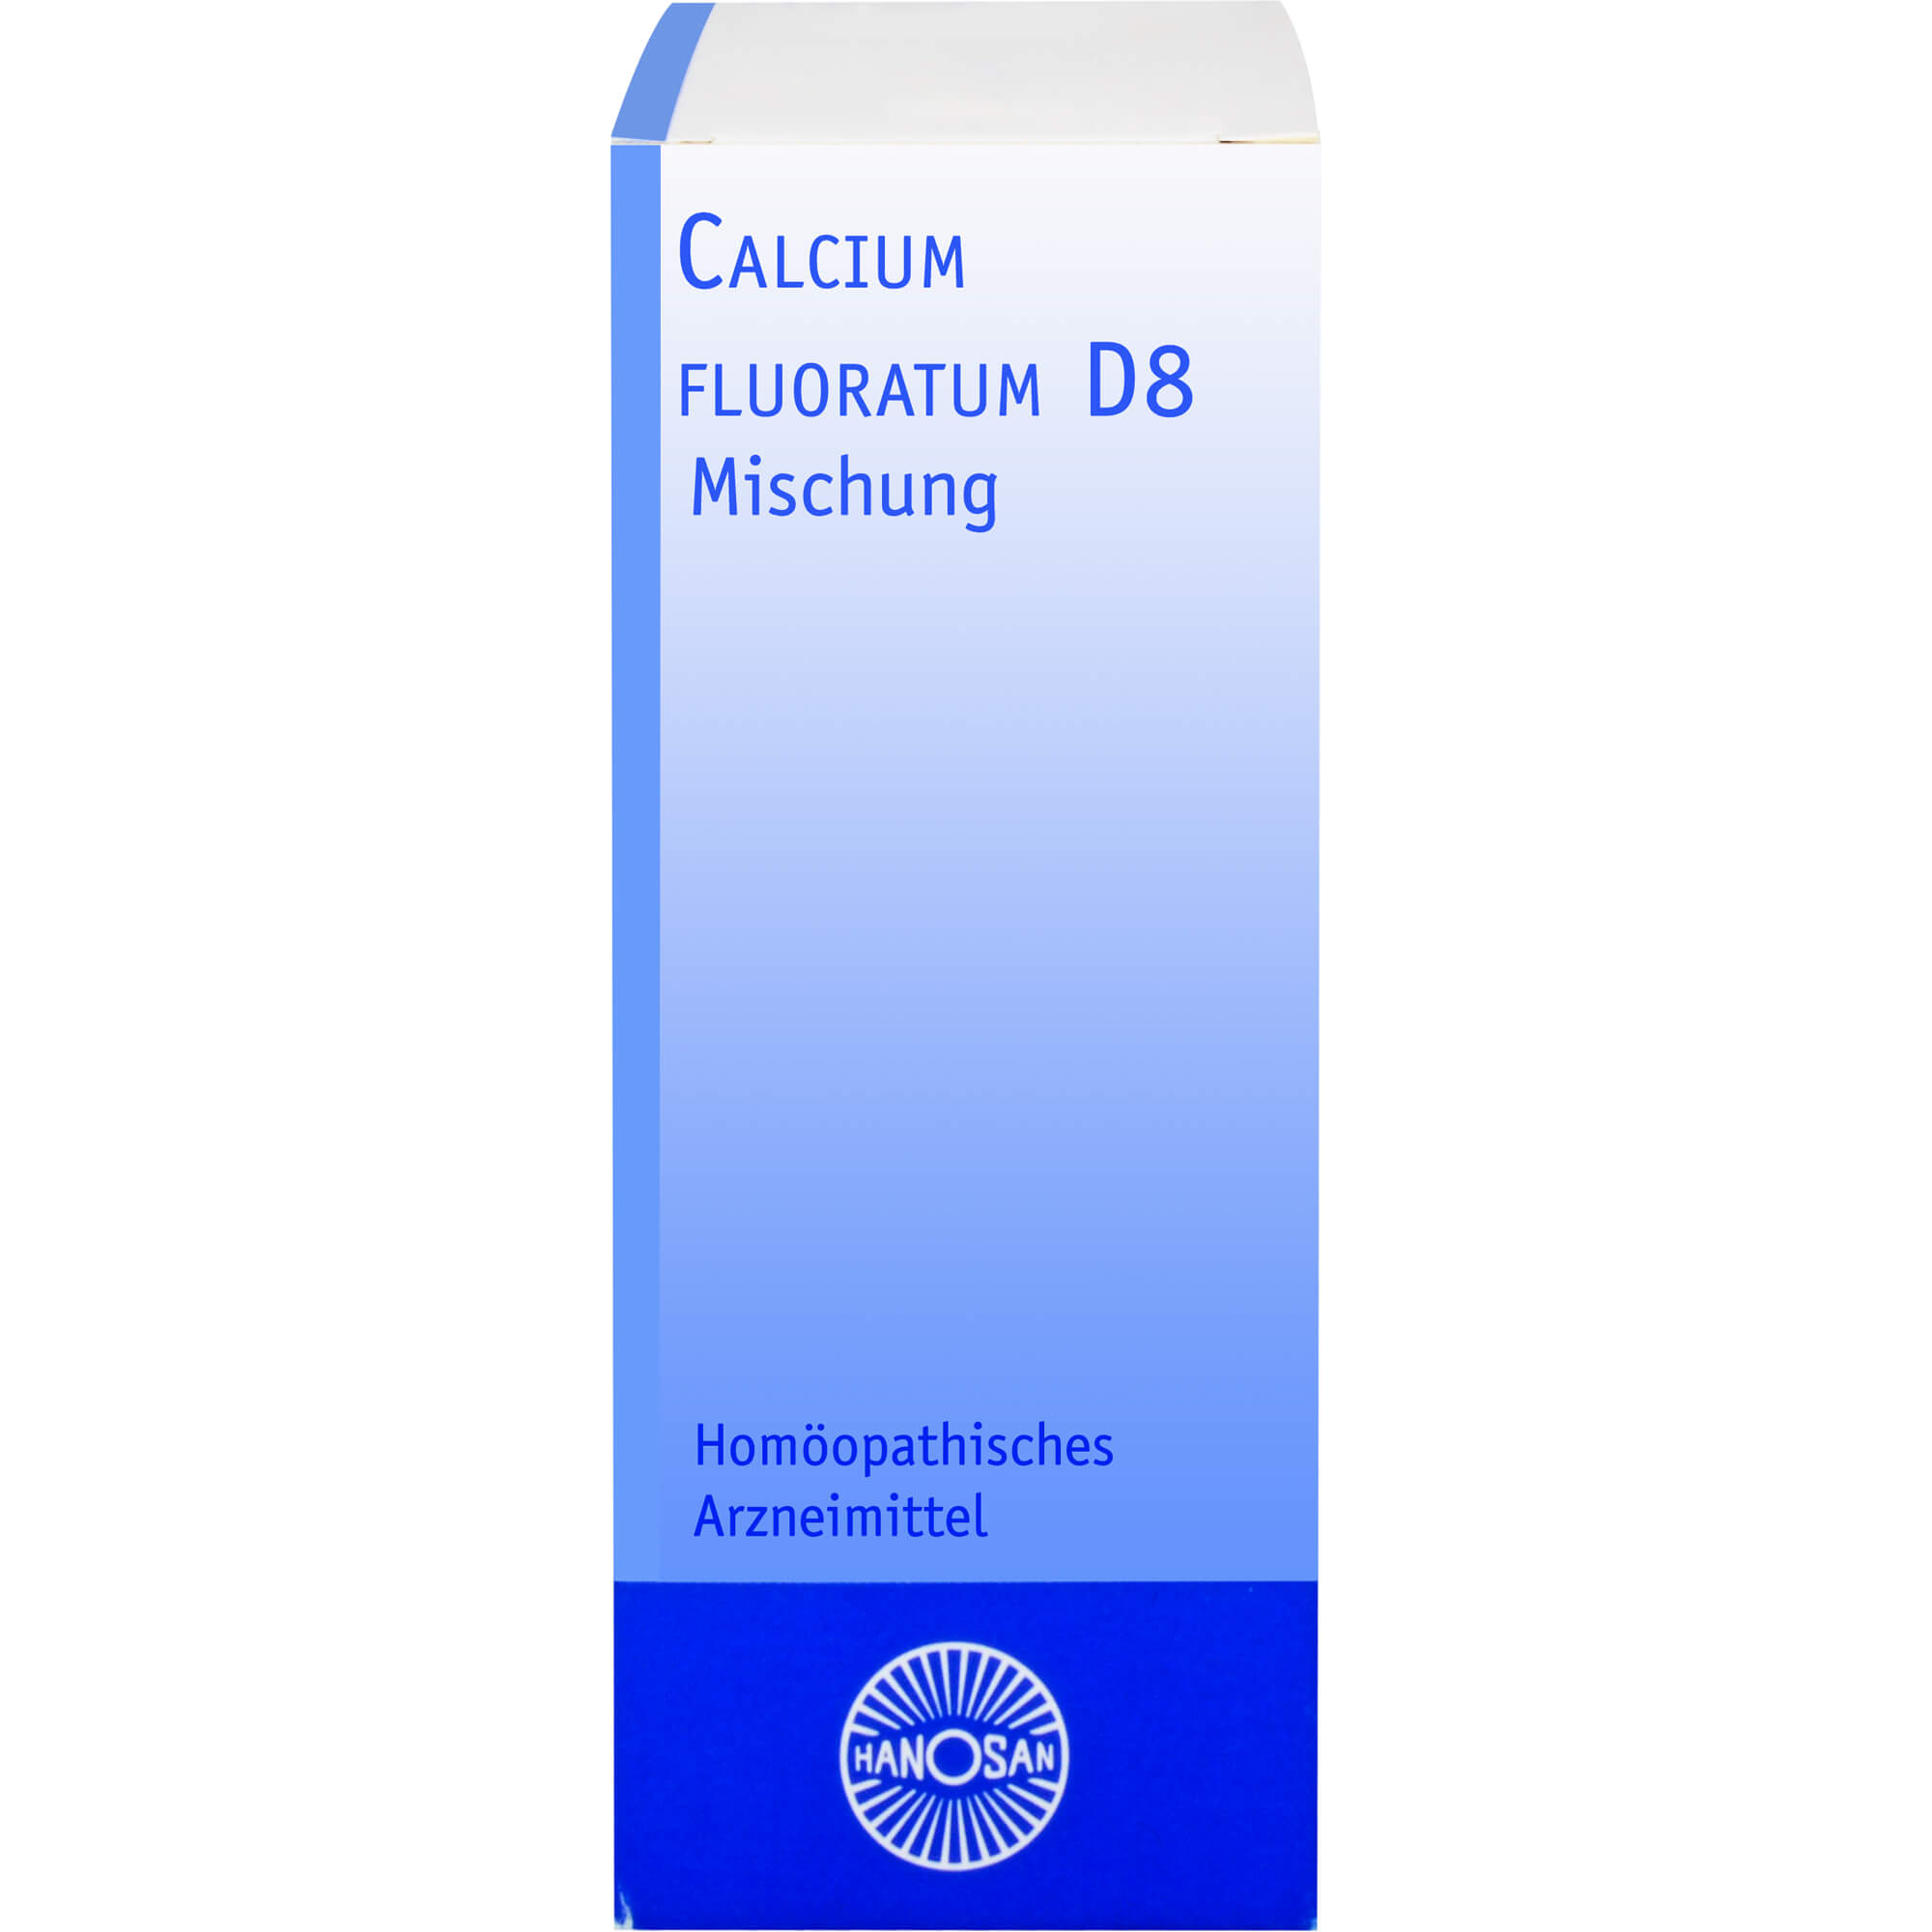 CALCIUM FLUORATUM D 8 Hanosan Dilution